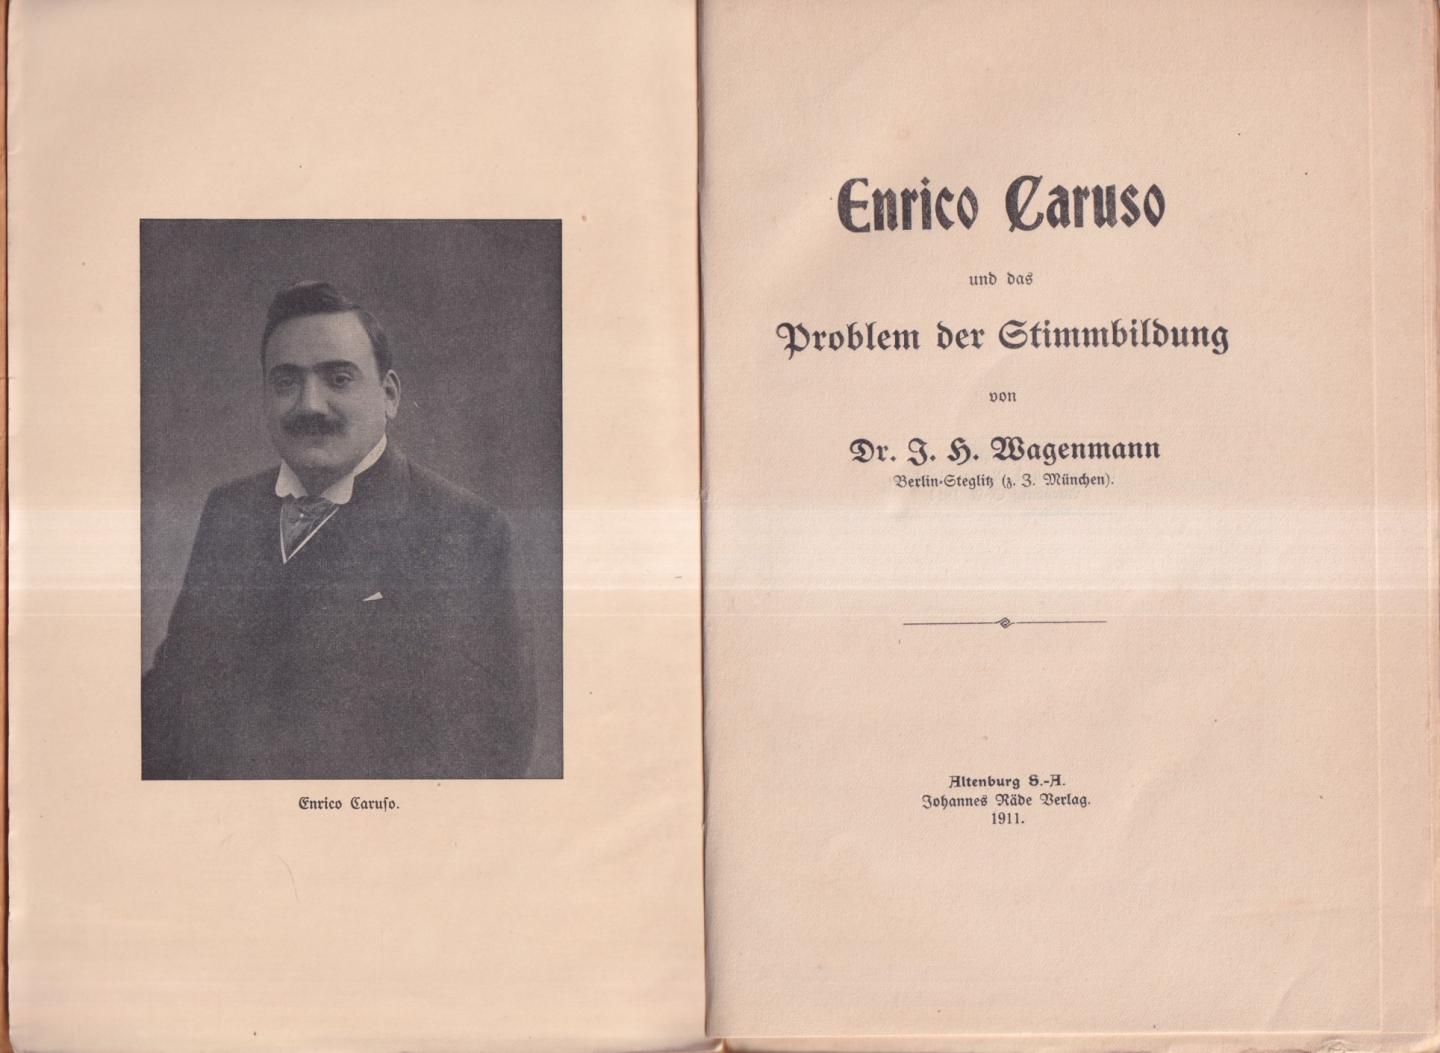 Wagenmann, Dr. J. H. - Enrico Caruso und das Problem der Stimmbildung